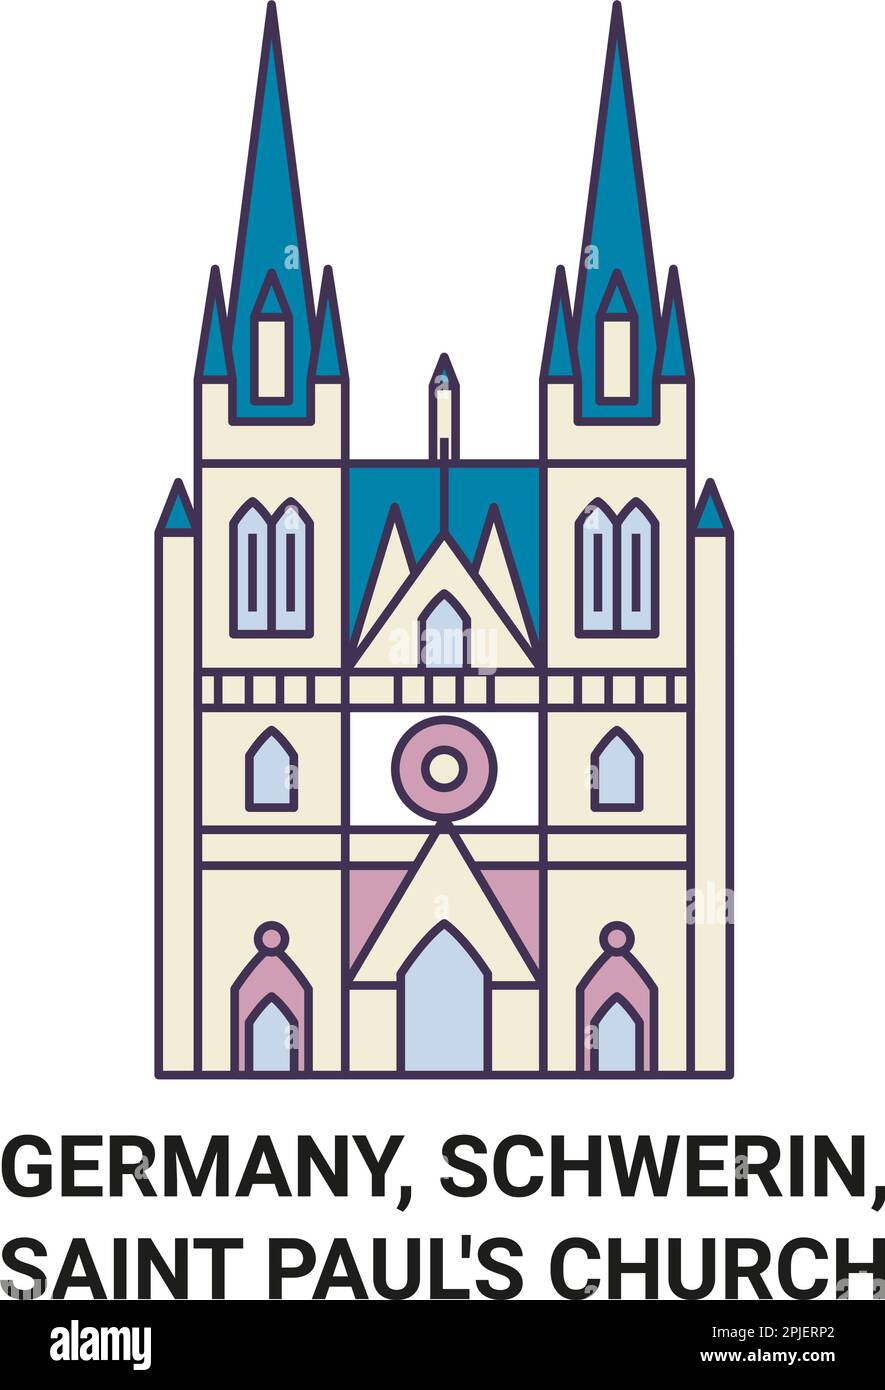 Allemagne, Schwerin, l'église Saint-Paul Voyage repère illustration vecteur Illustration de Vecteur